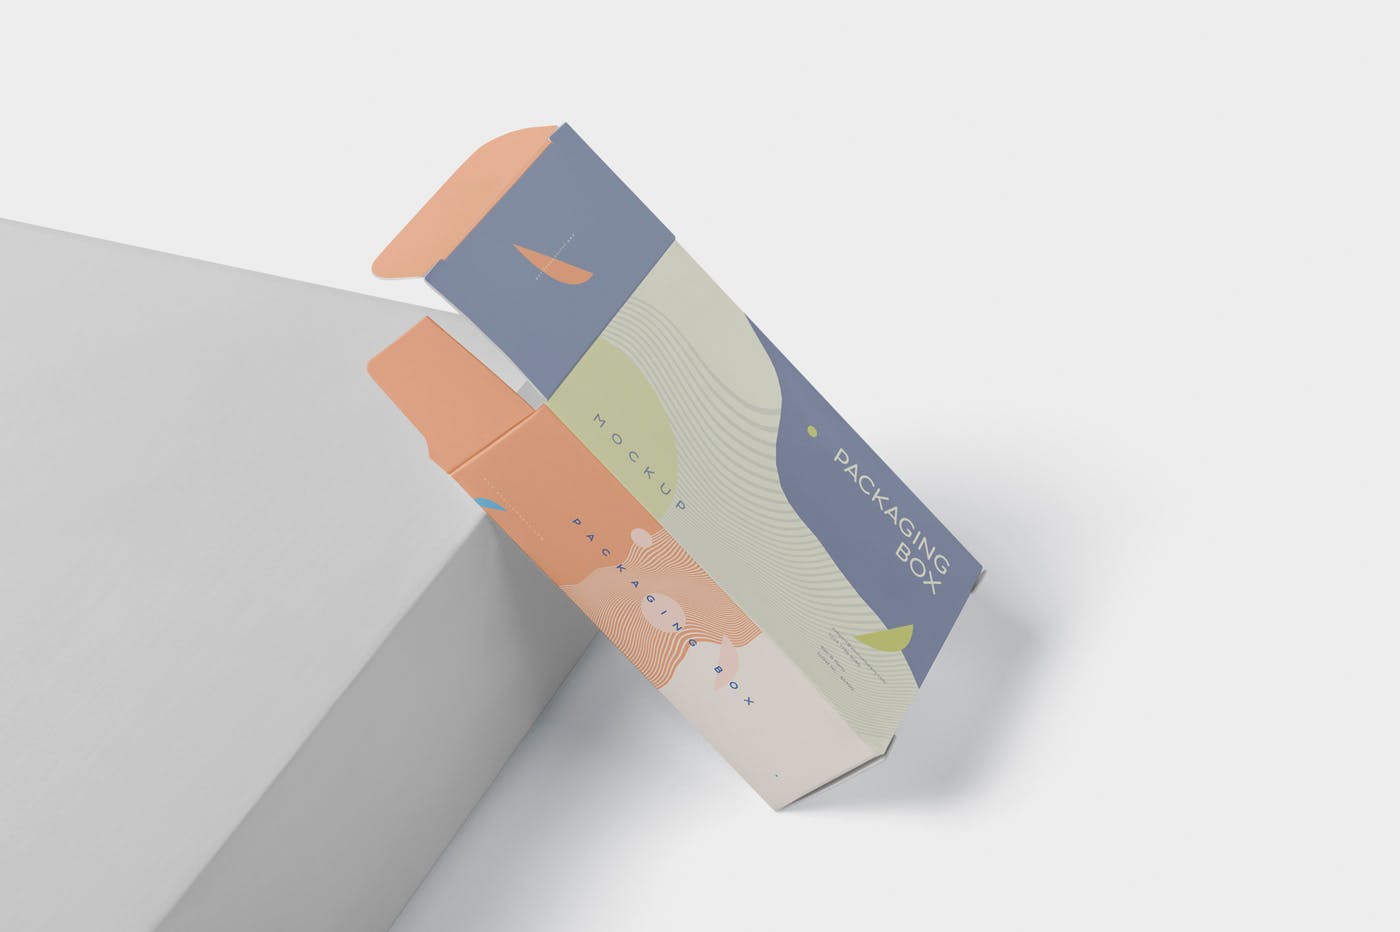 扁平矩形产品包装盒效果图蚂蚁素材精选 Package Box Mockup – Slim Rectangle Shape插图(2)